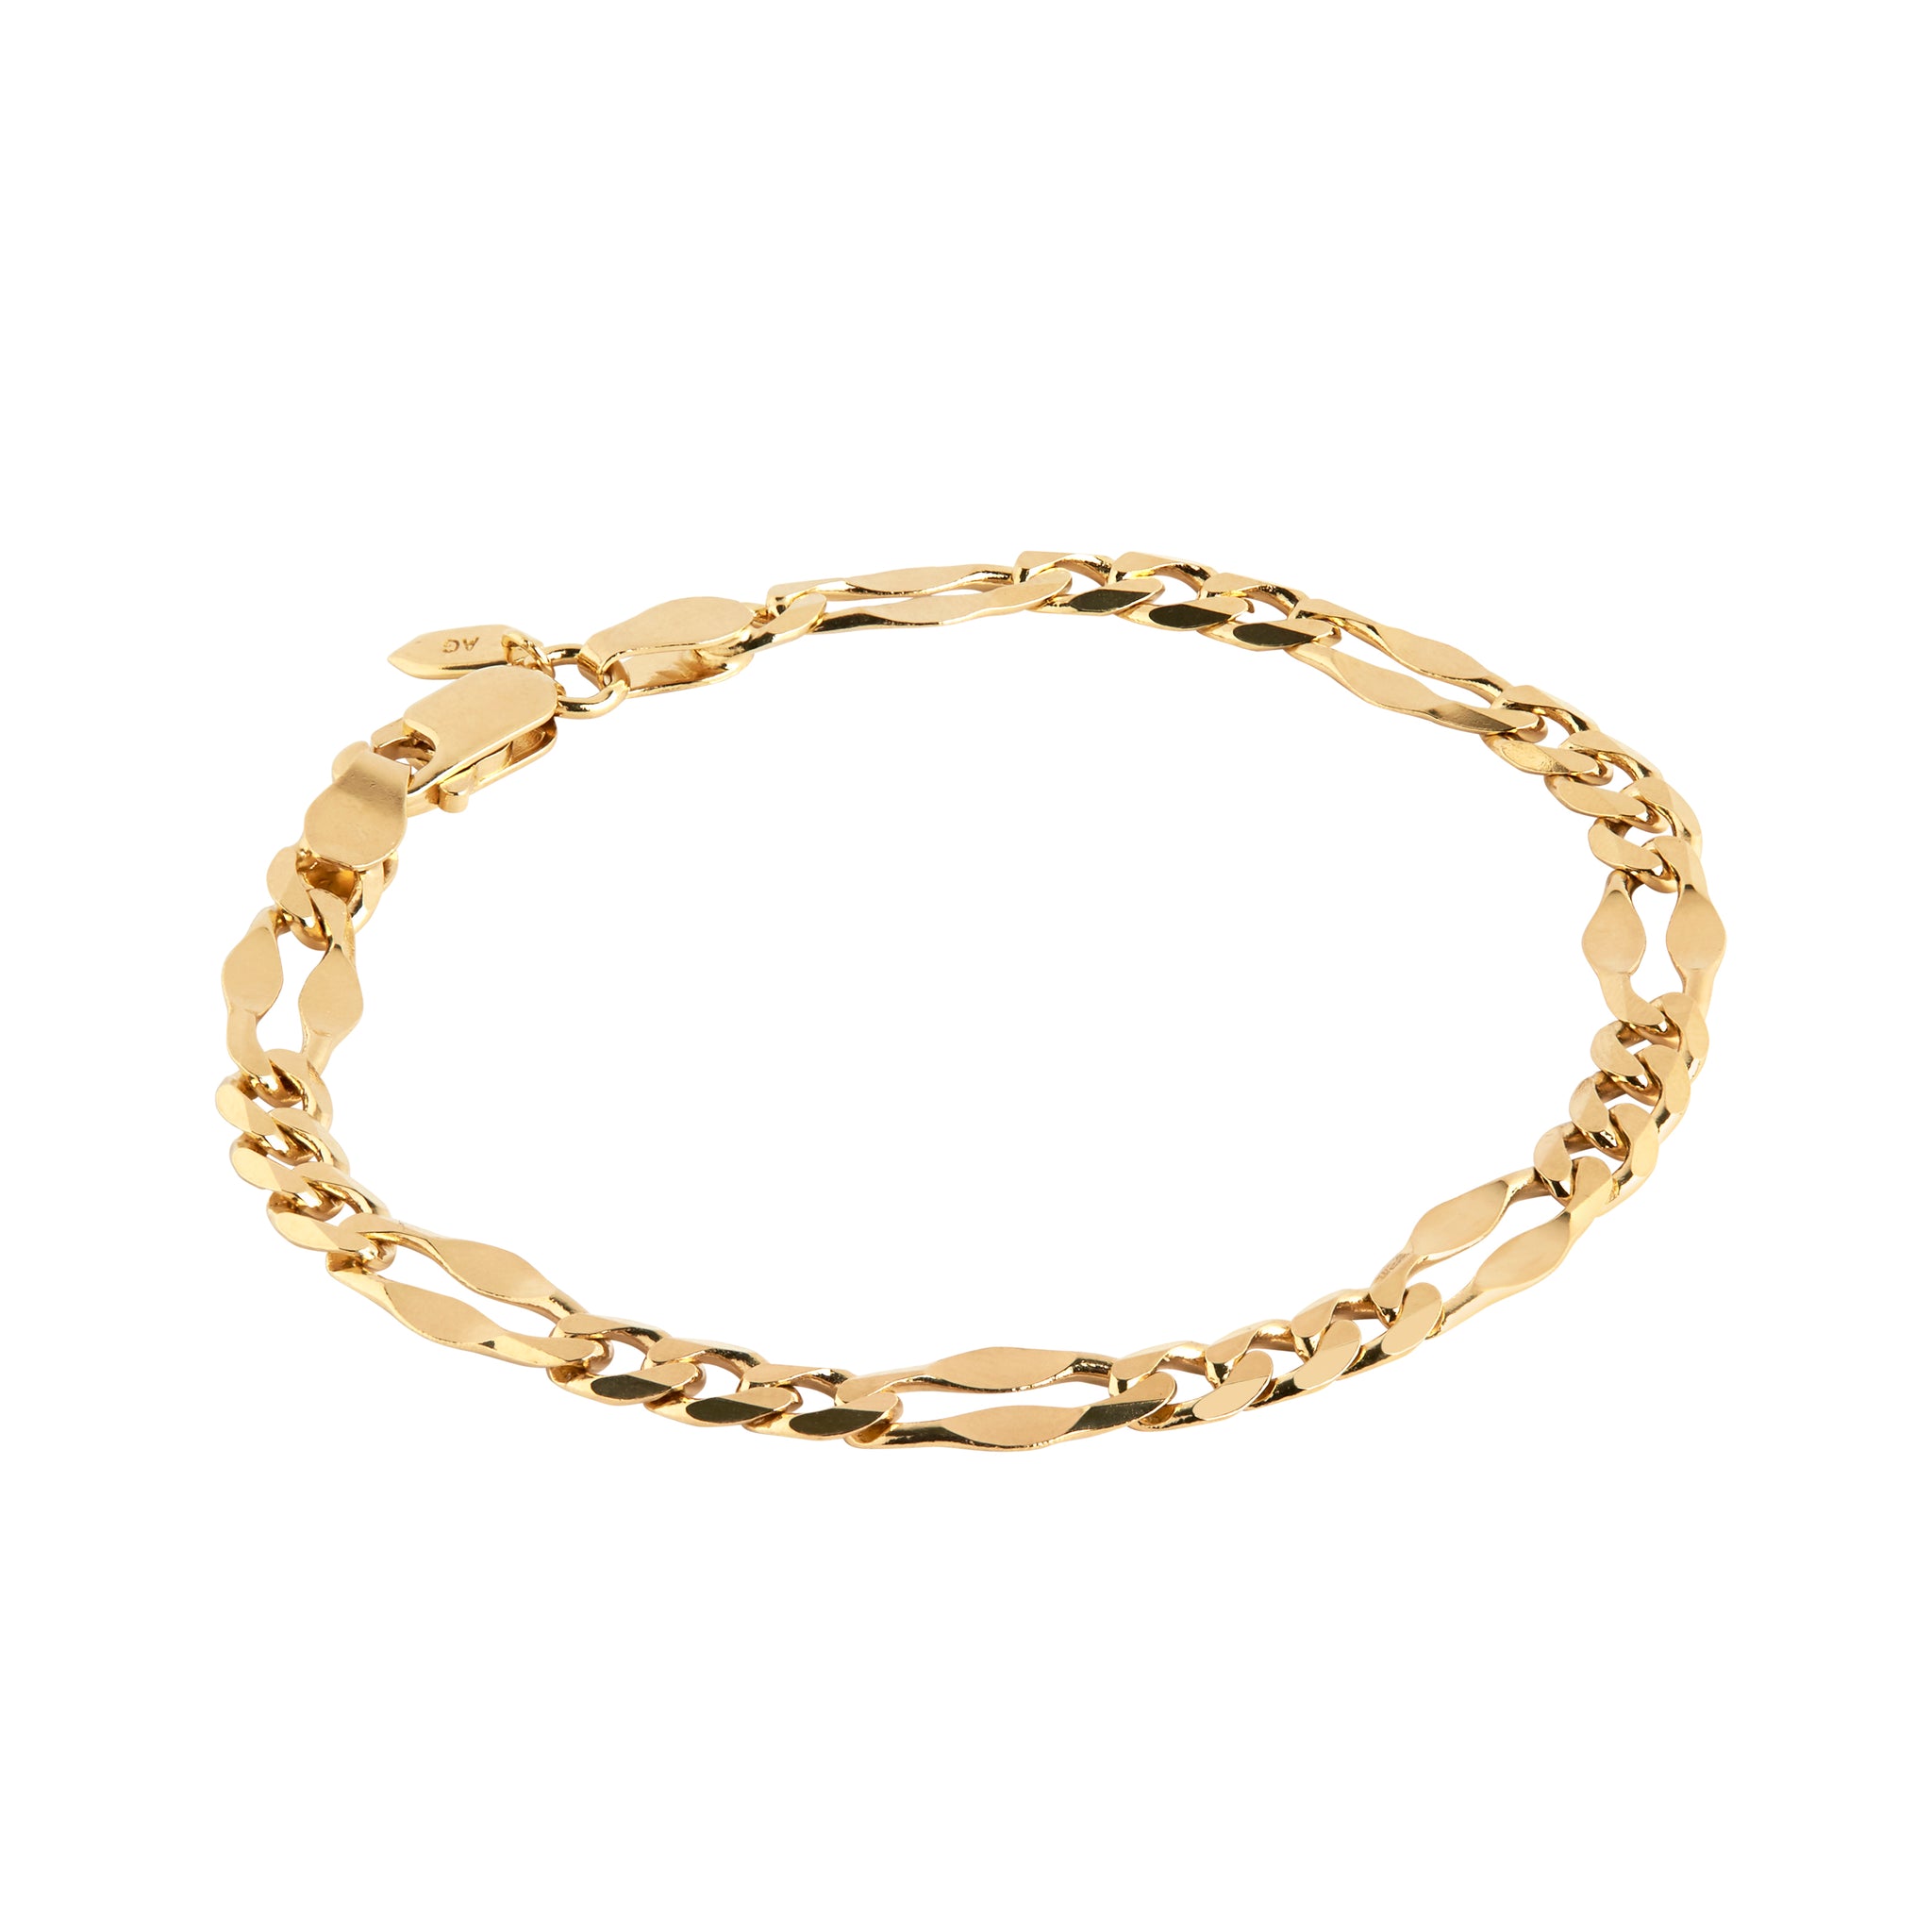 Dean bracelet in gold by Maria Black